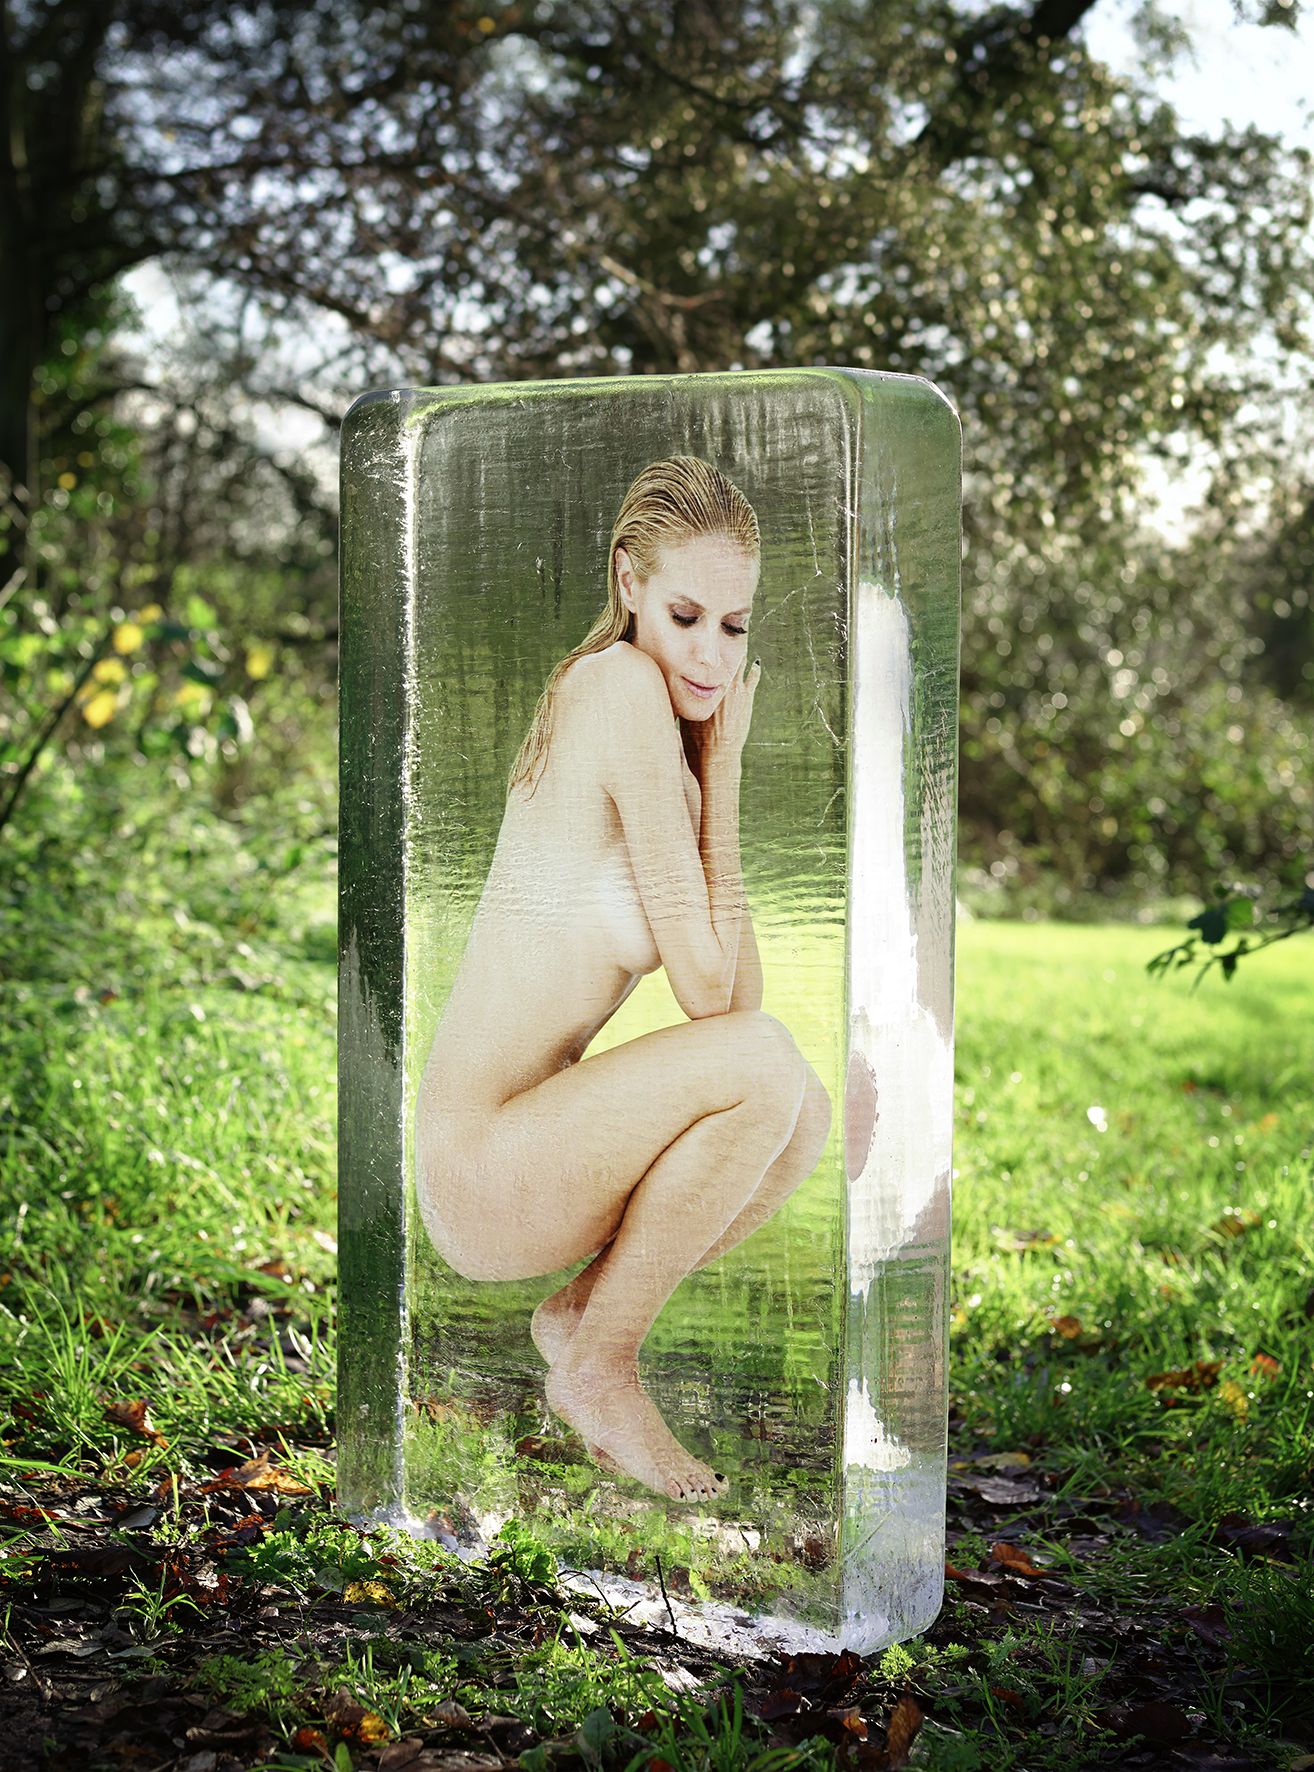 Nude pic of Heidi Klum